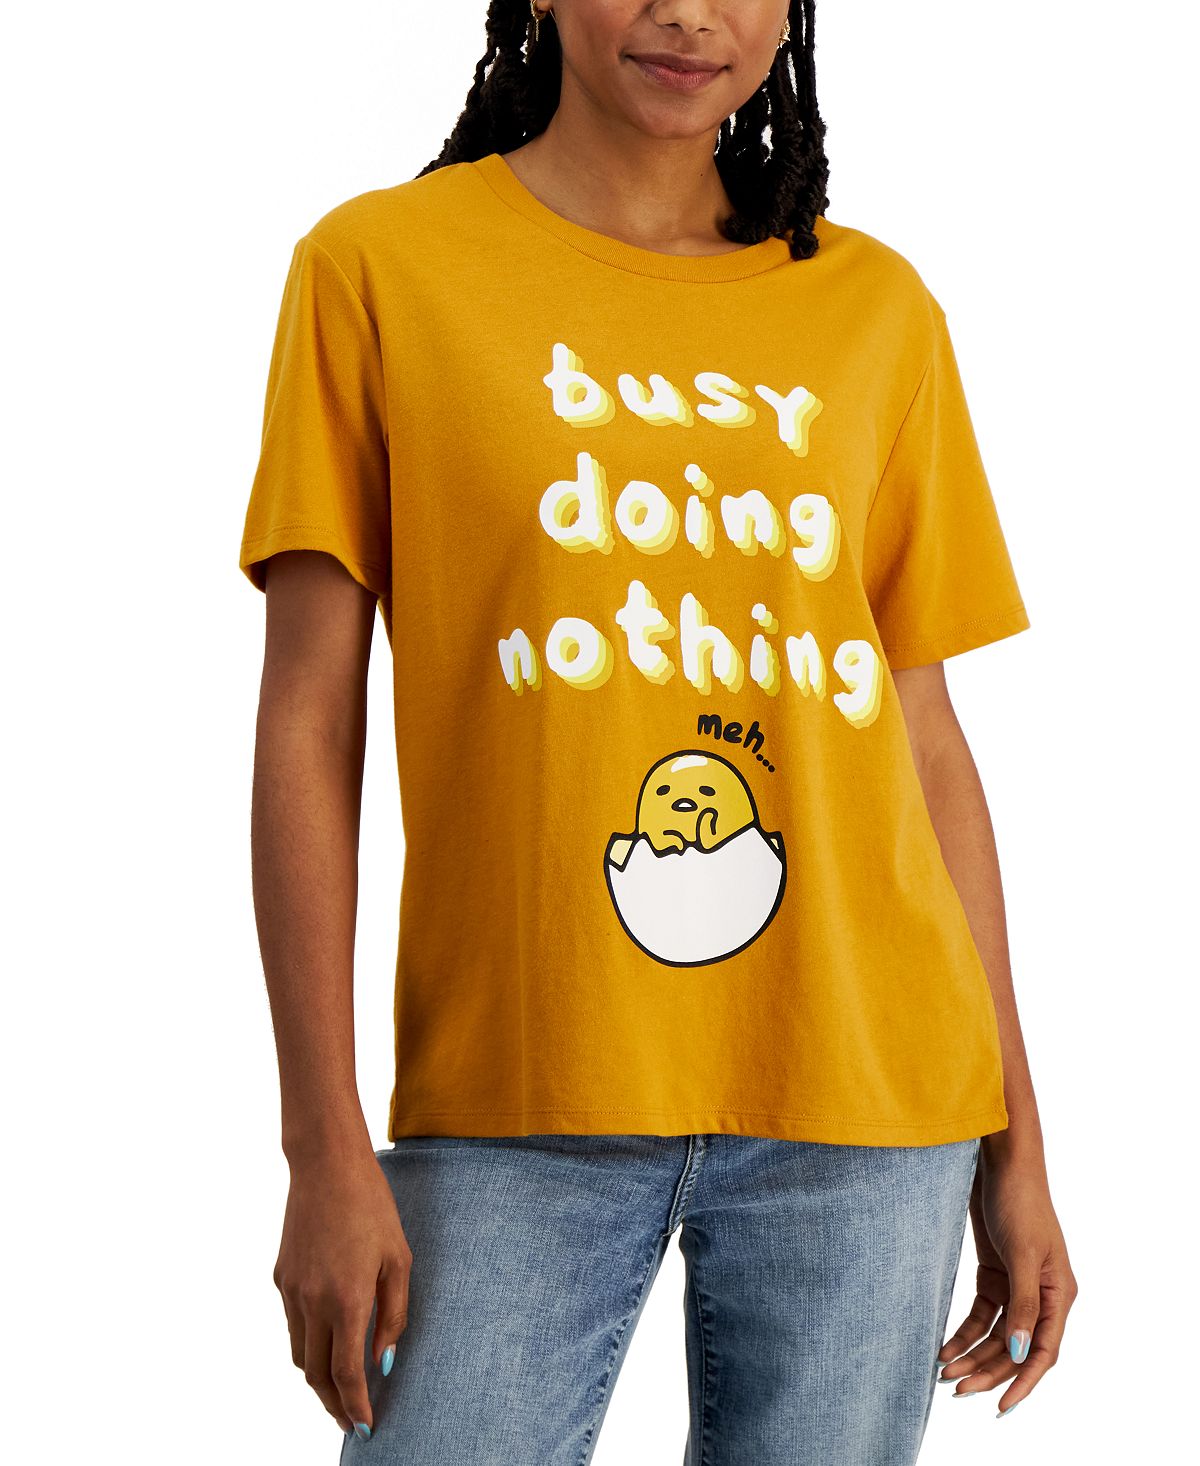 Футболка gudetama busy doing nothing для юниоров Love Tribe повседневная футболка с принтом фигуры футболка с графическим рисунком летний женский топ с круглым вырезом свободная рубашка с коротким